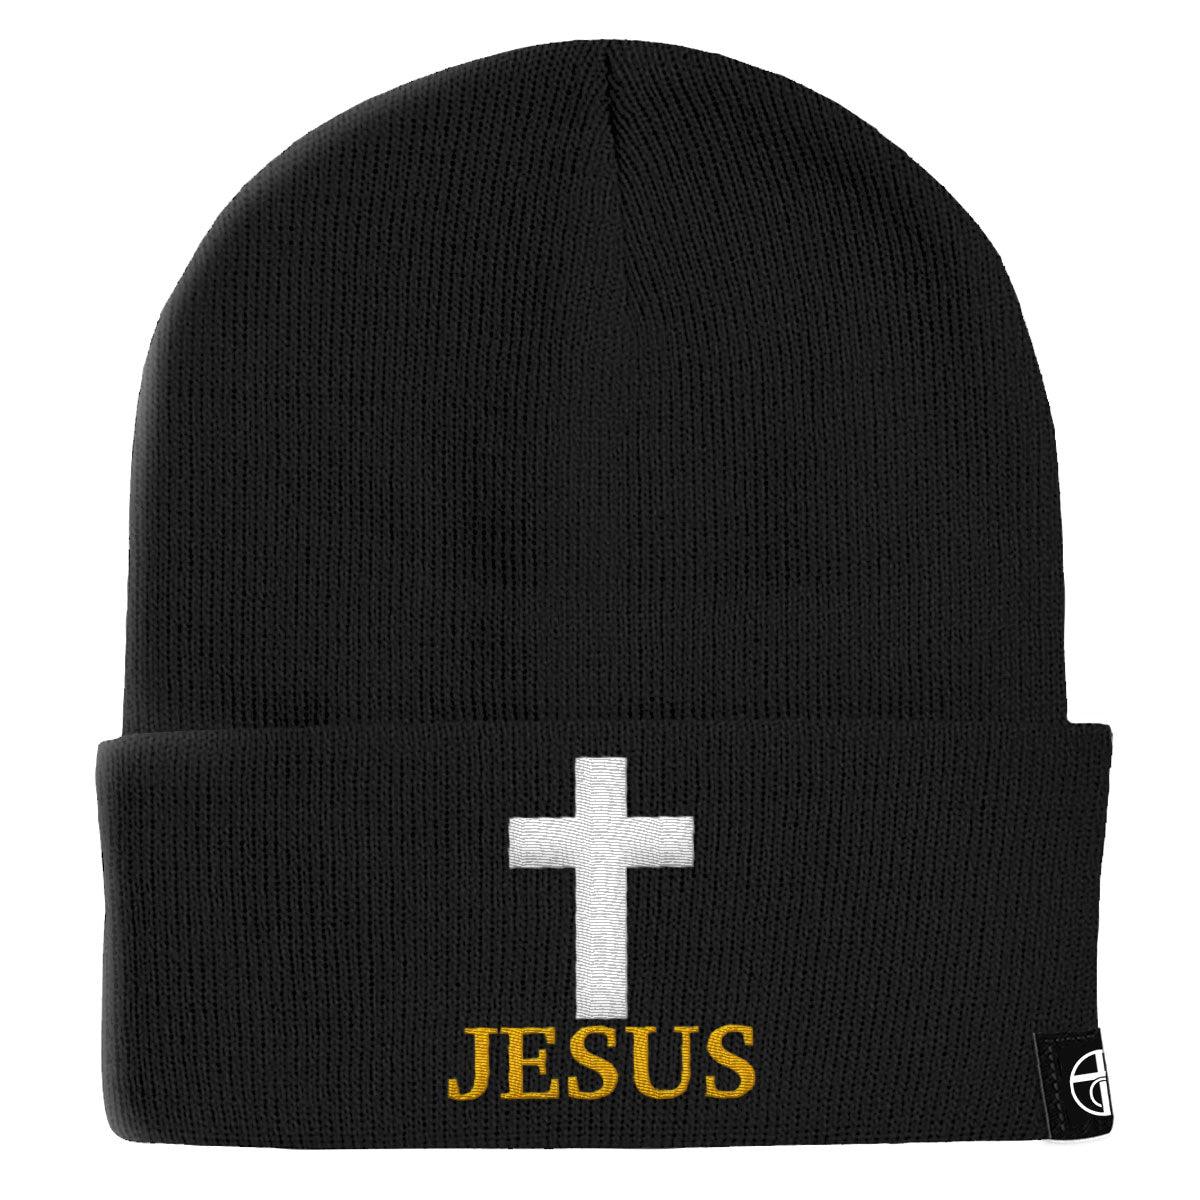 Jesus Cross Beanies - Our True God